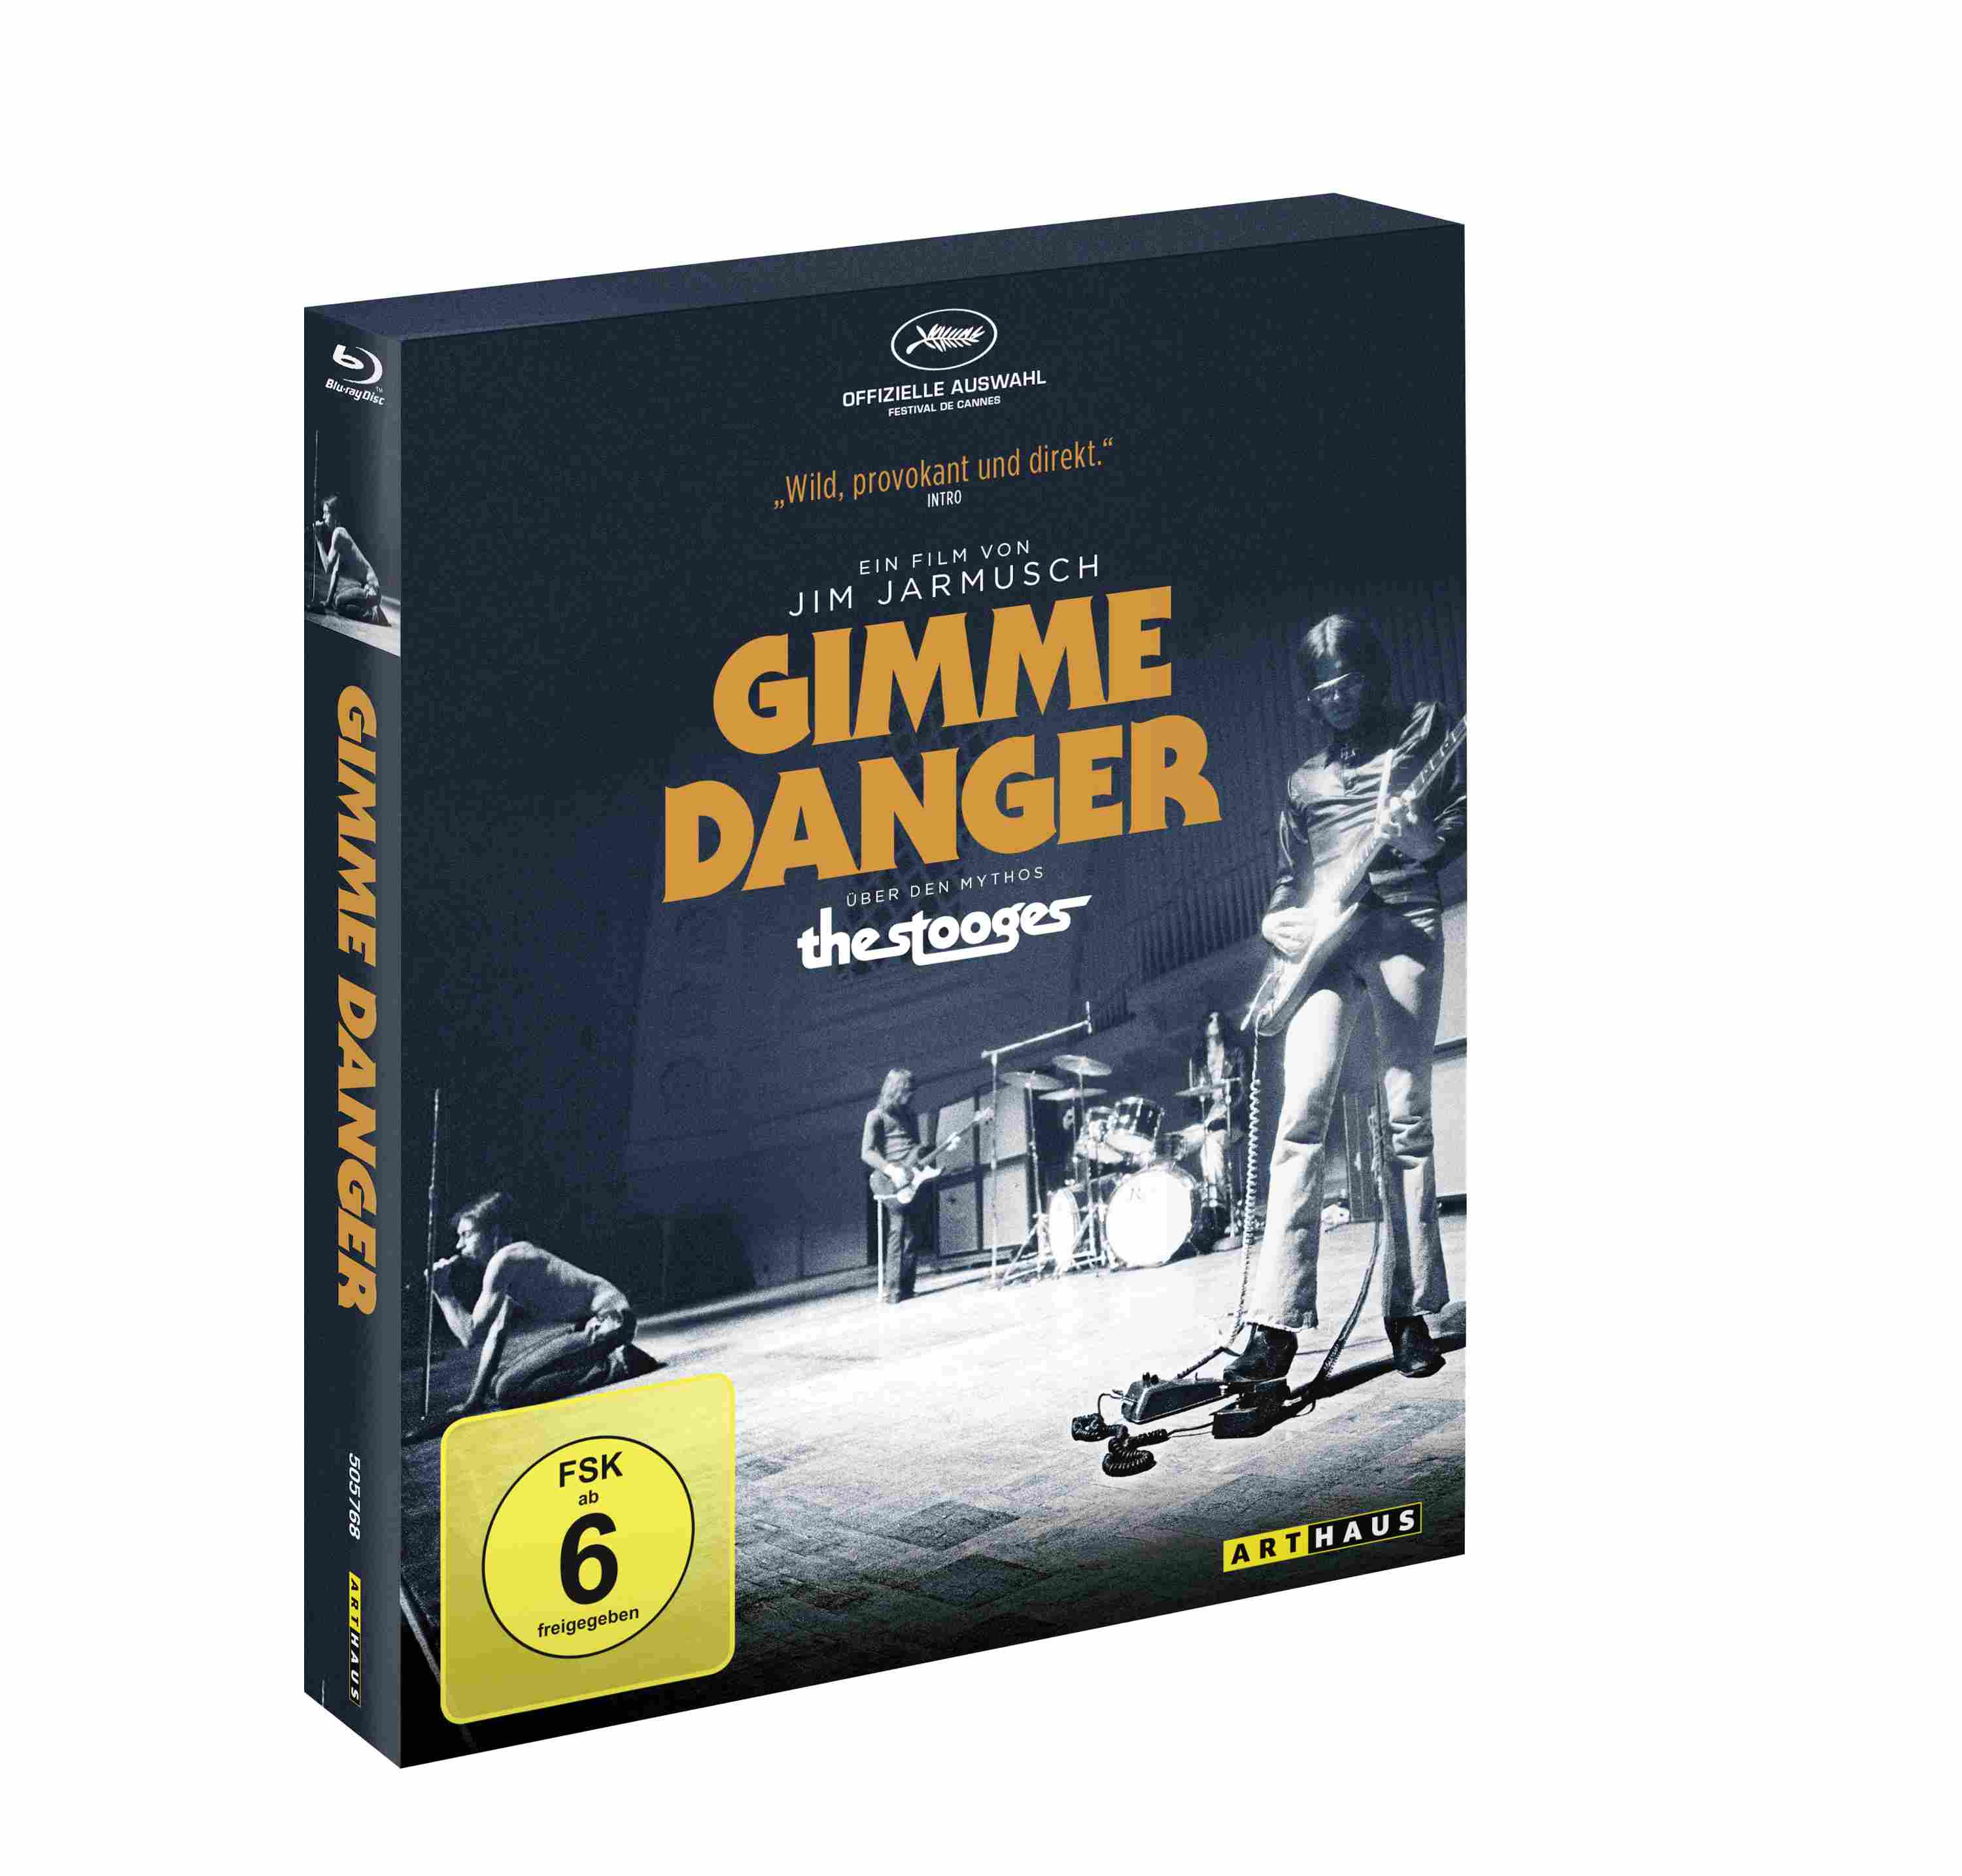 Gimme Danger - Digipak Bild 2.jpg